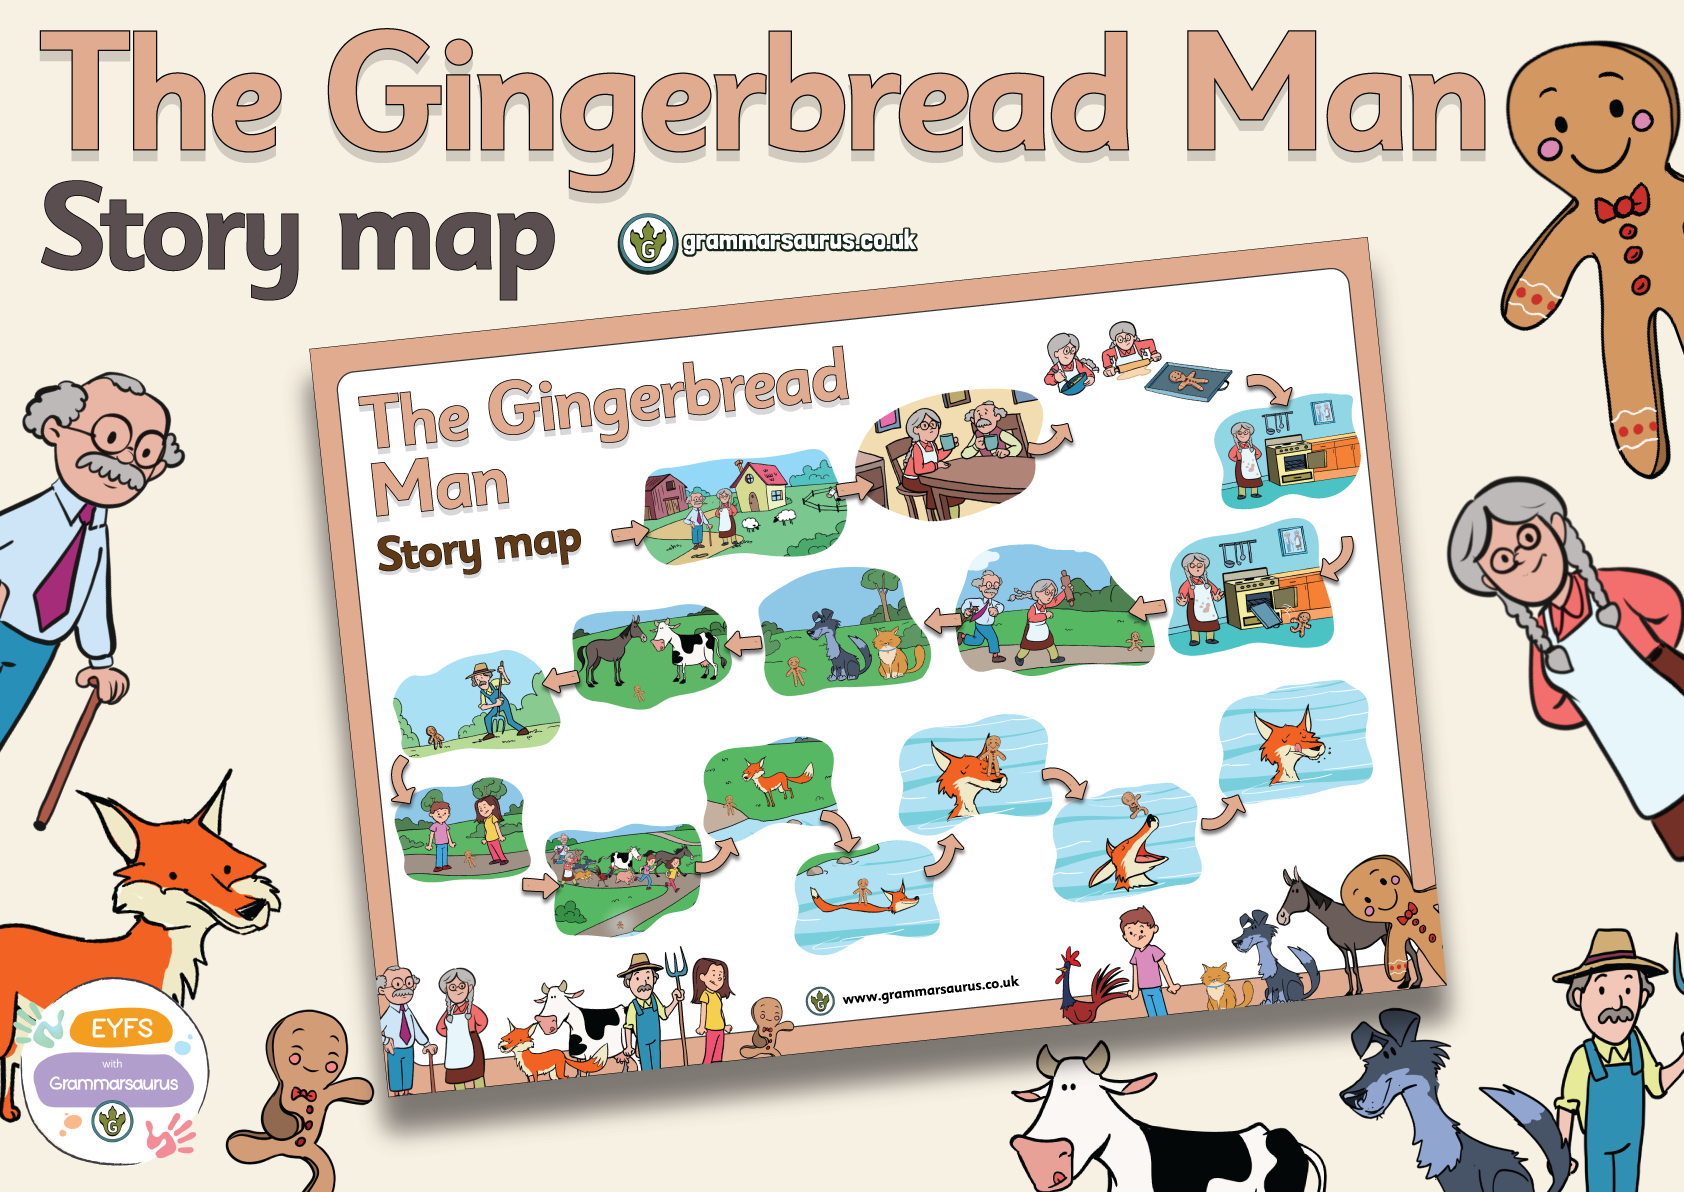 eyfs-the-gingerbread-man-story-map-grammarsaurus